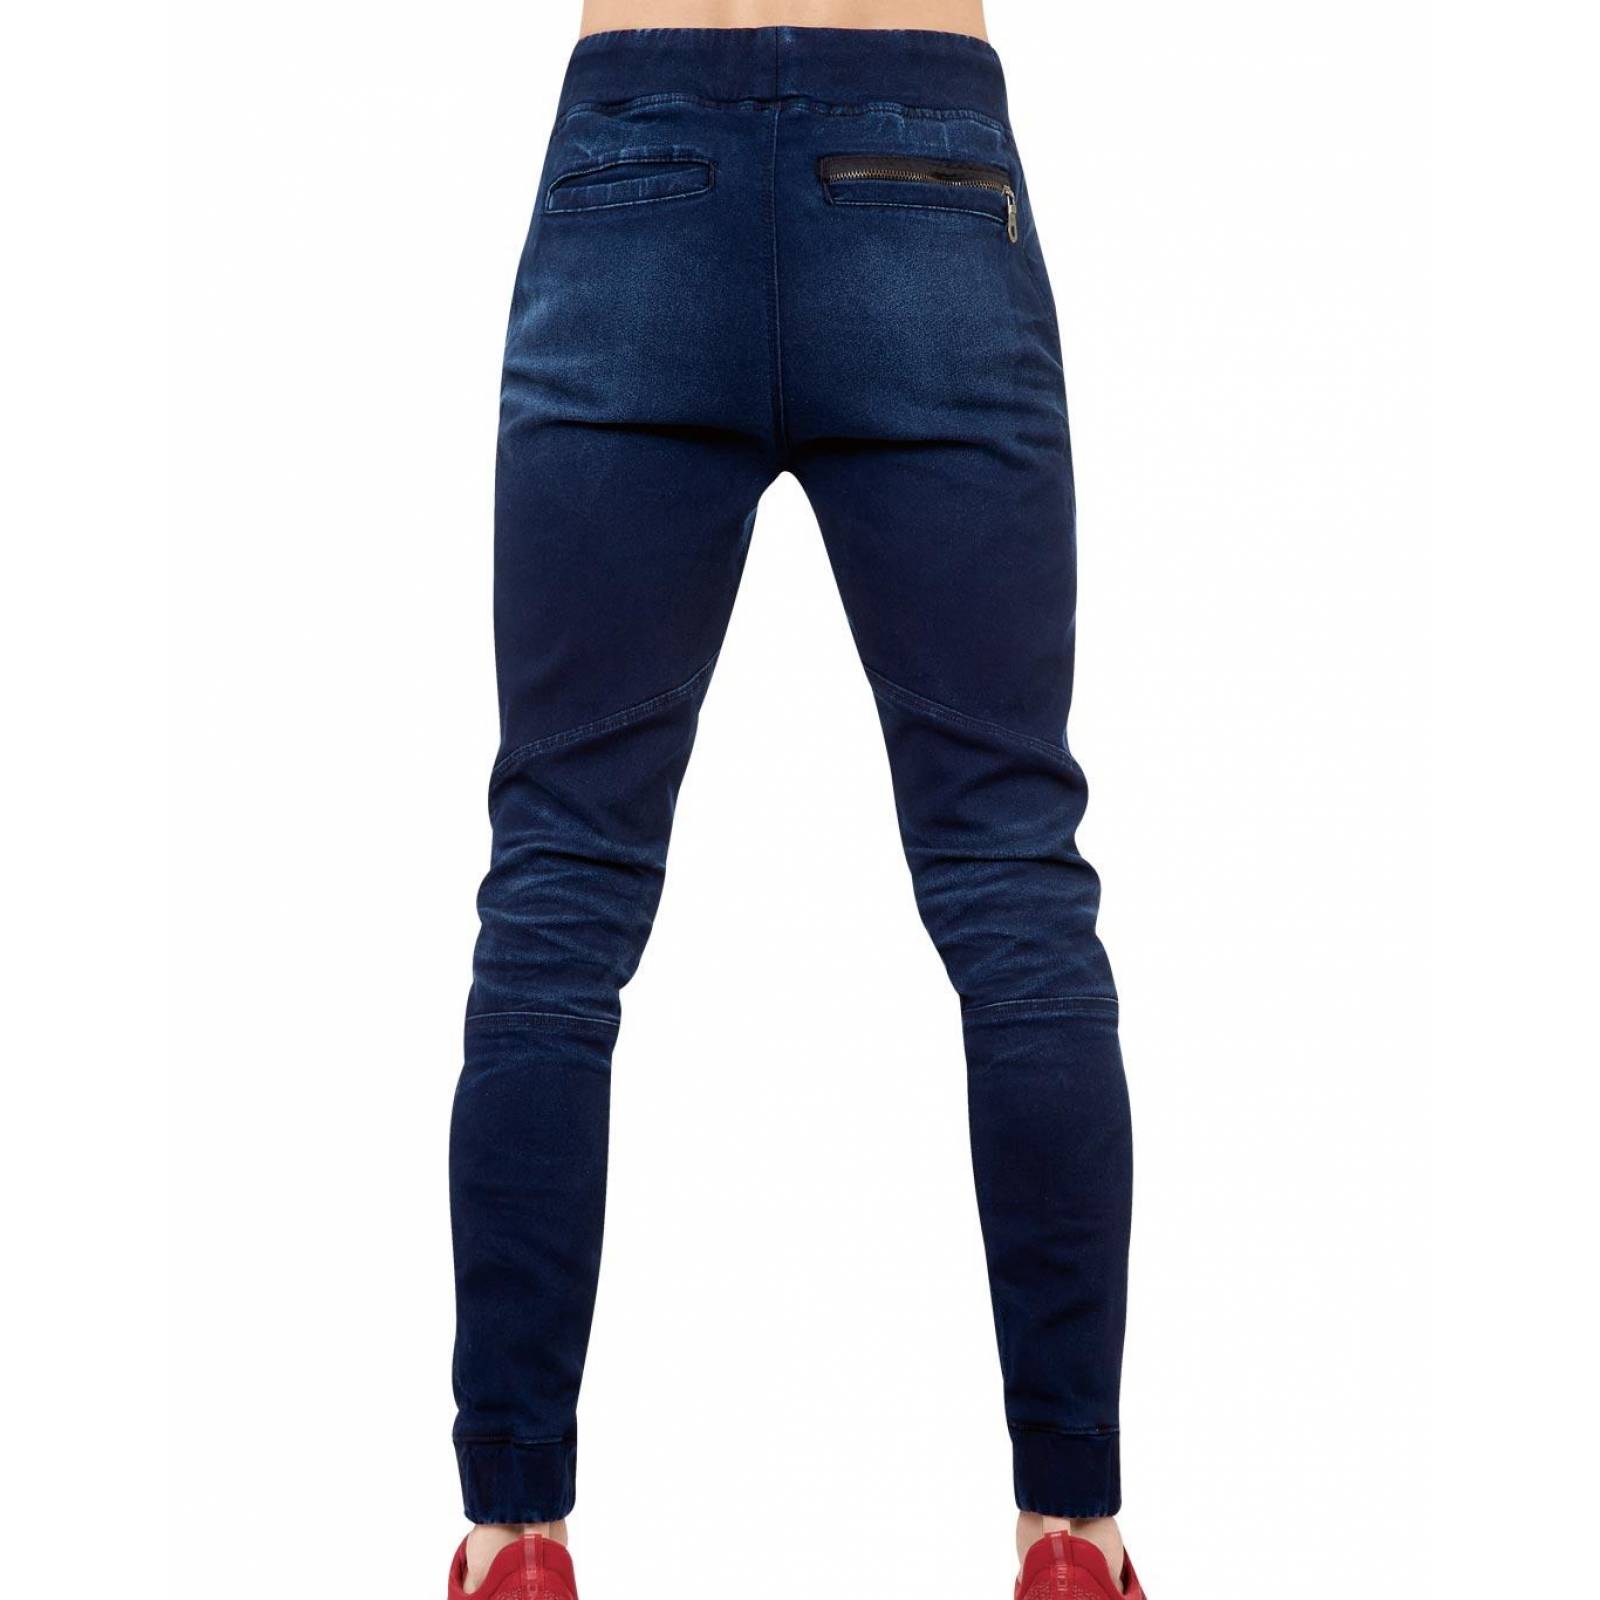 Jeans Moda Hombre Salvaje Tentación Indigo 71803416 Mezclilla Stretch 